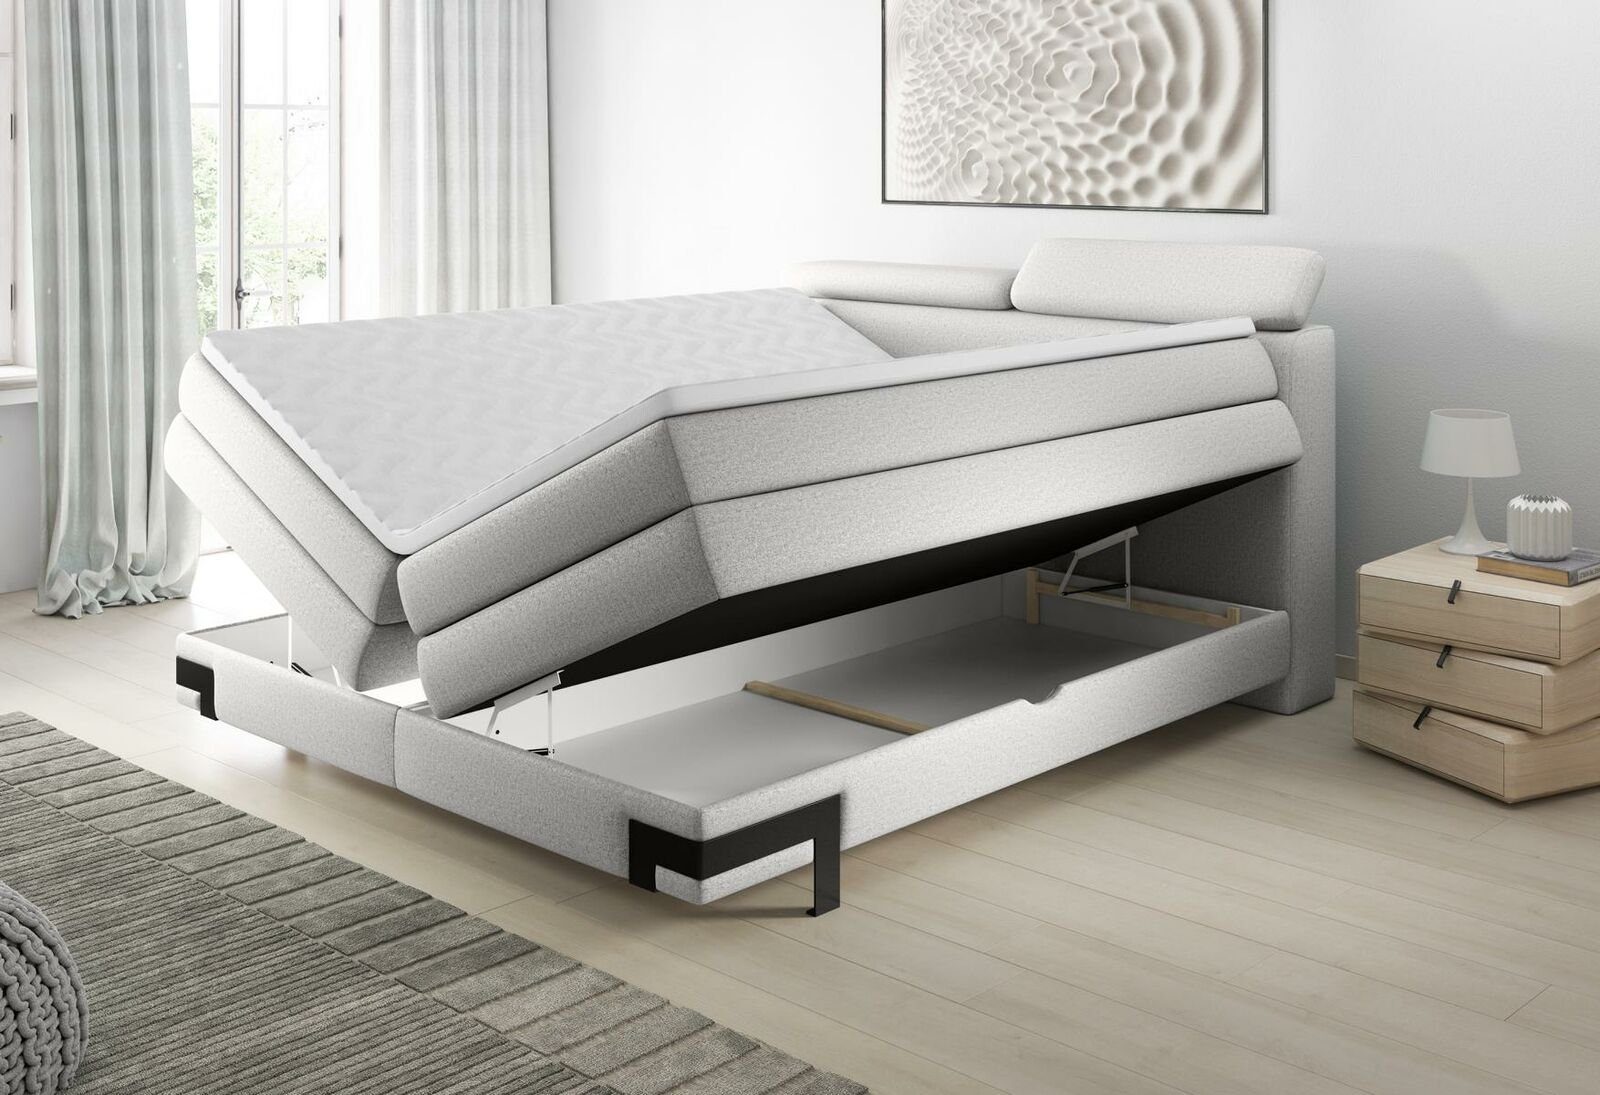 Zimmer JVmoebel Boxspring Betten Matratze Design Luxus Ehe Bett, Bett Schlaf